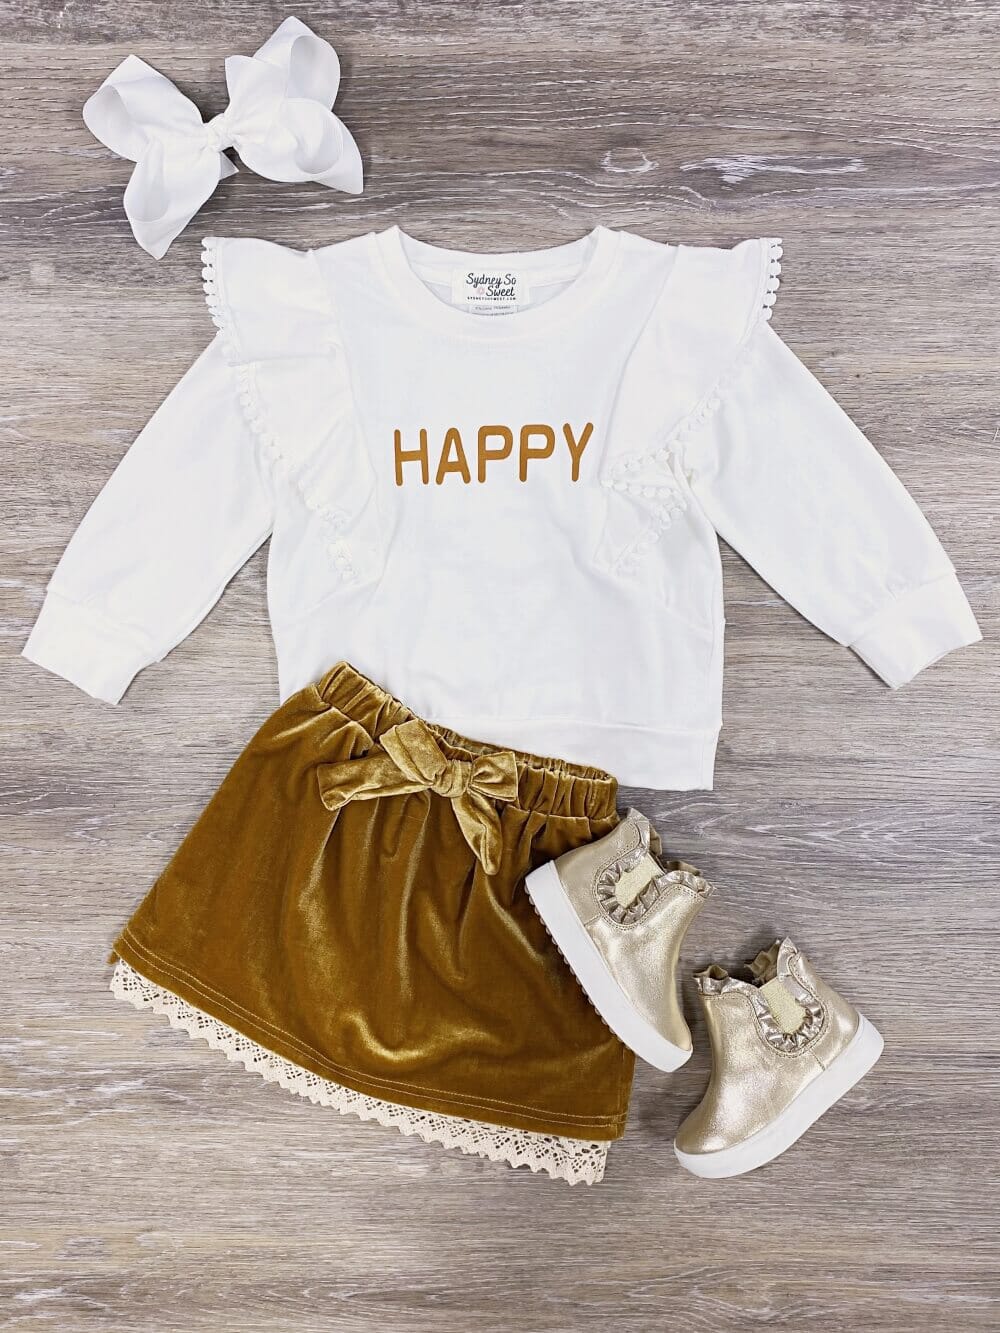 Happy Gold Velvet Lace Trim Girls Skirt Set - Sydney So Sweet